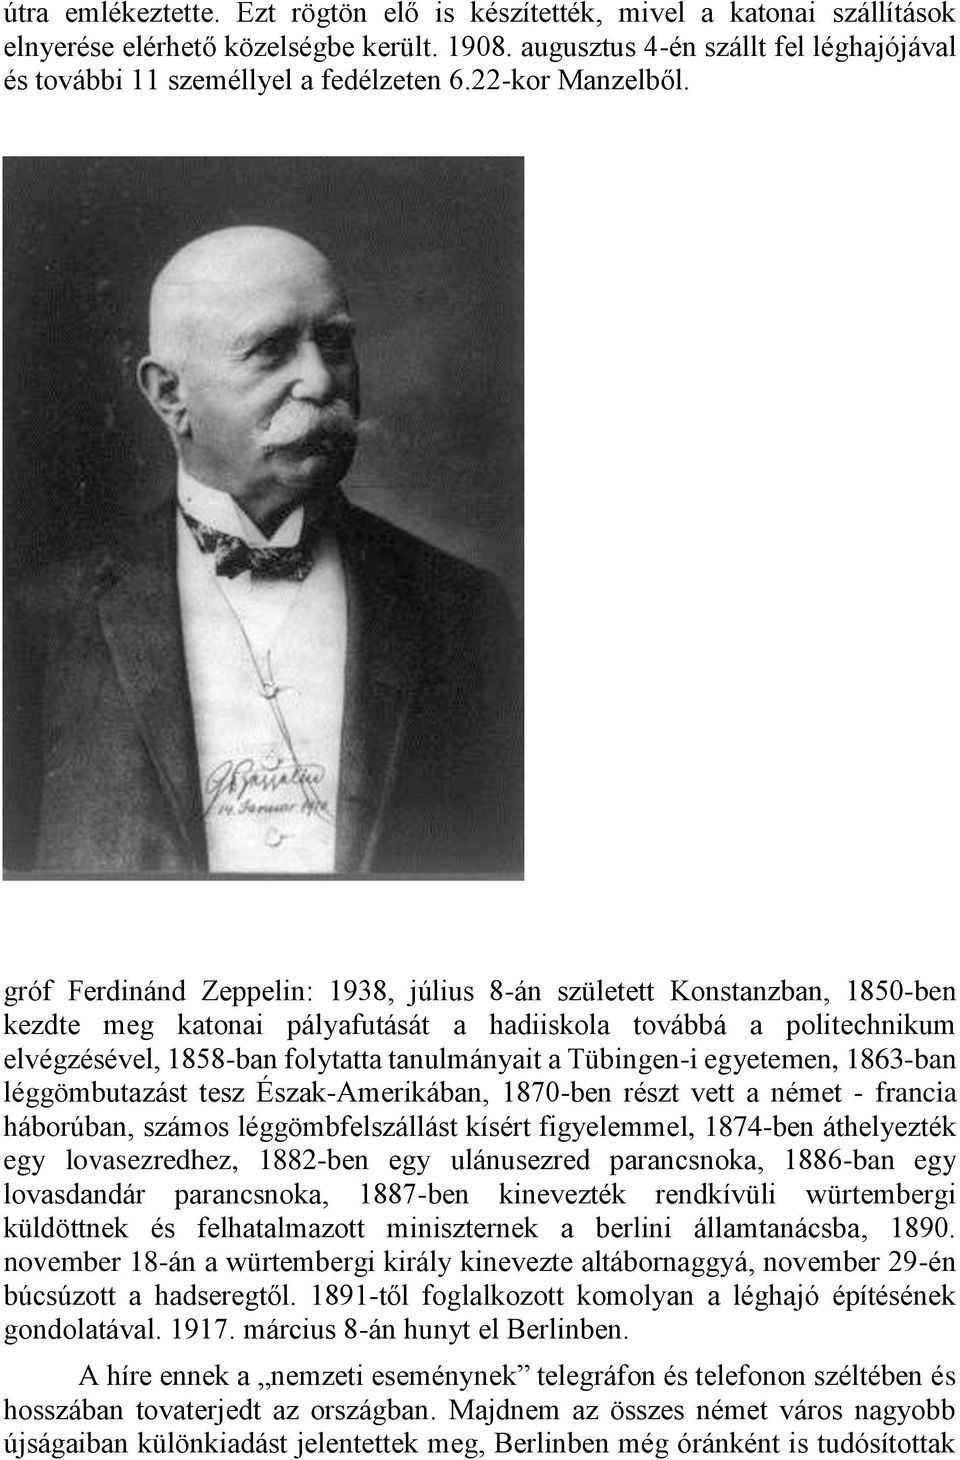 gróf Ferdinánd Zeppelin: 1938, július 8-án született Konstanzban, 1850-ben kezdte meg katonai pályafutását a hadiiskola továbbá a politechnikum elvégzésével, 1858-ban folytatta tanulmányait a